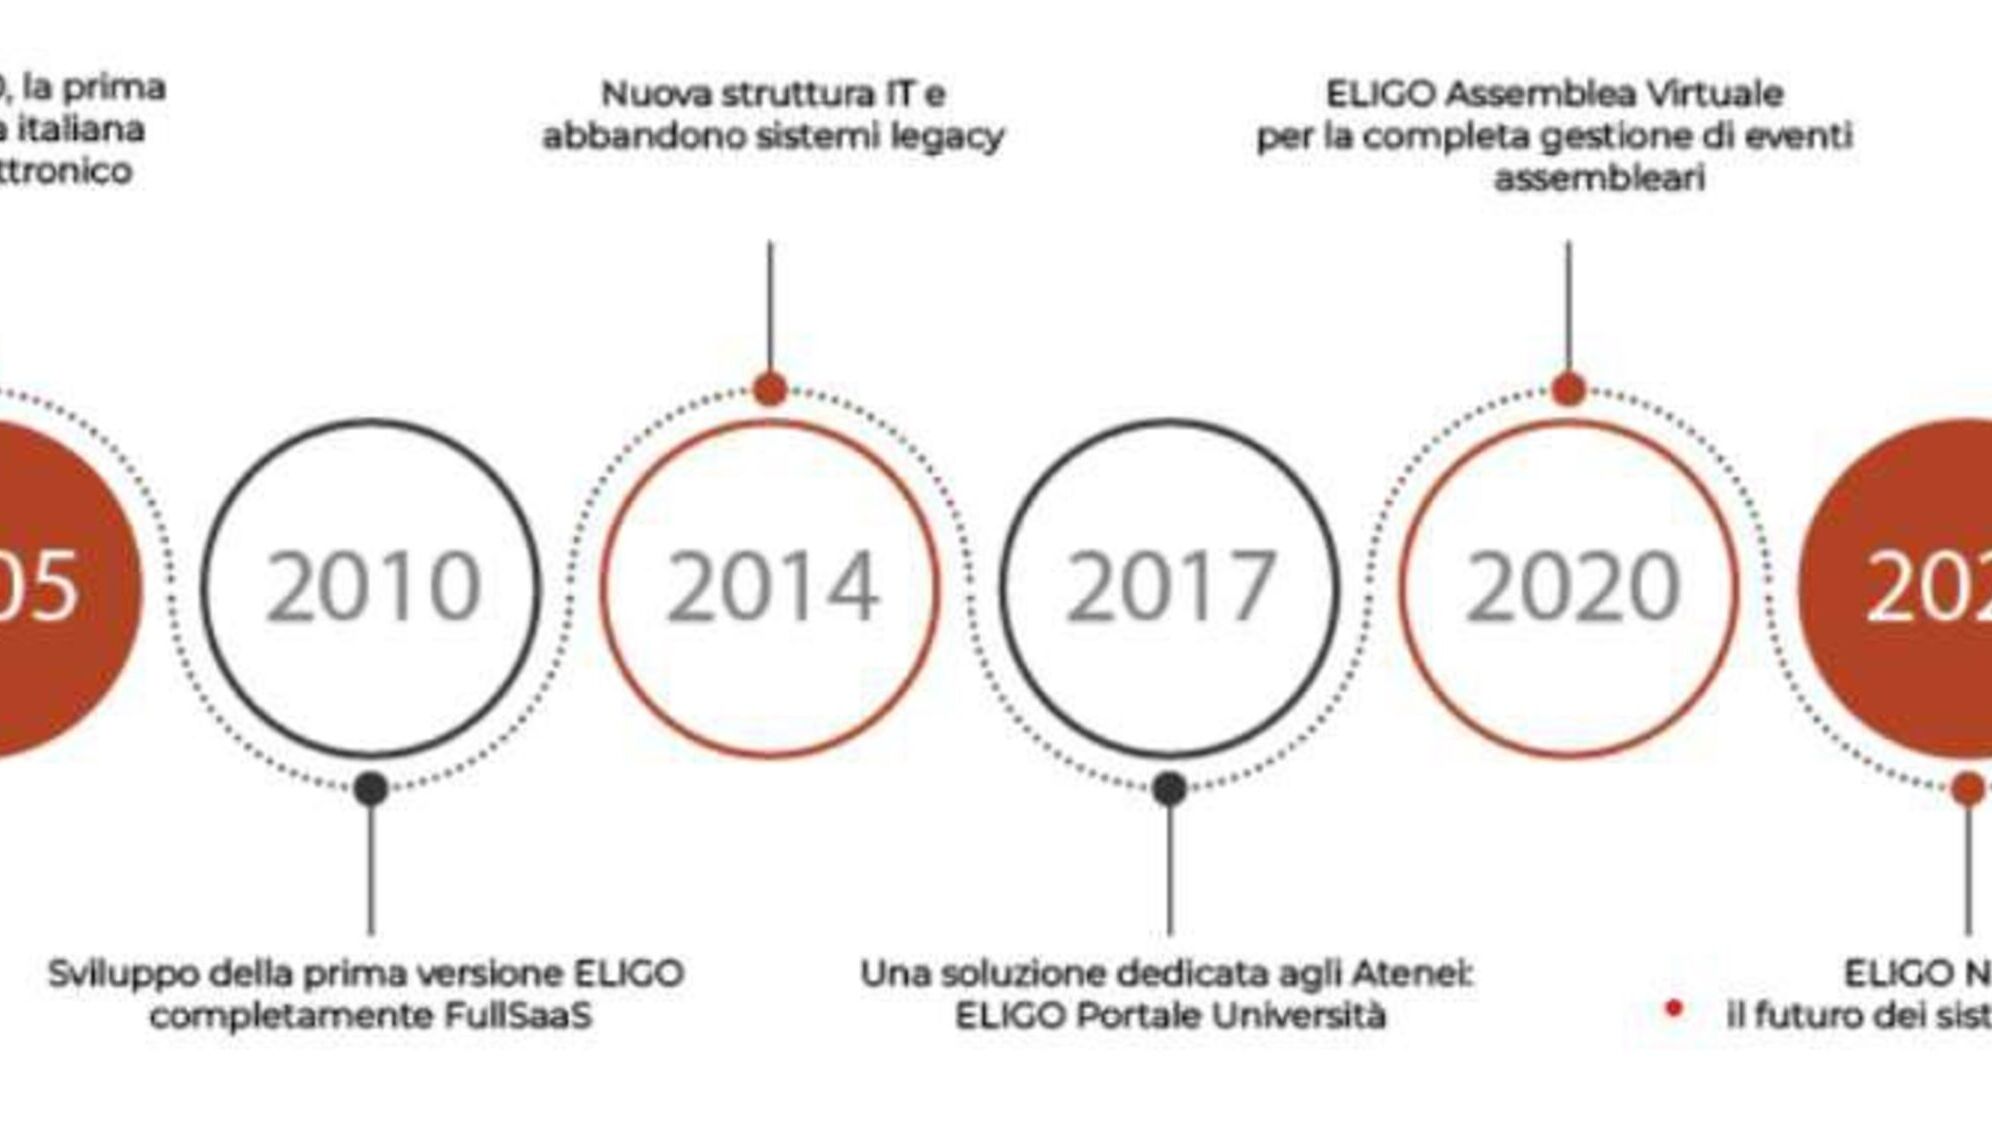 Eligo Next: un’interessante infografica ricavata dalla brochure ufficiale di presentazione della nuova piattaforma di voto elettronico ed online Eligo Next